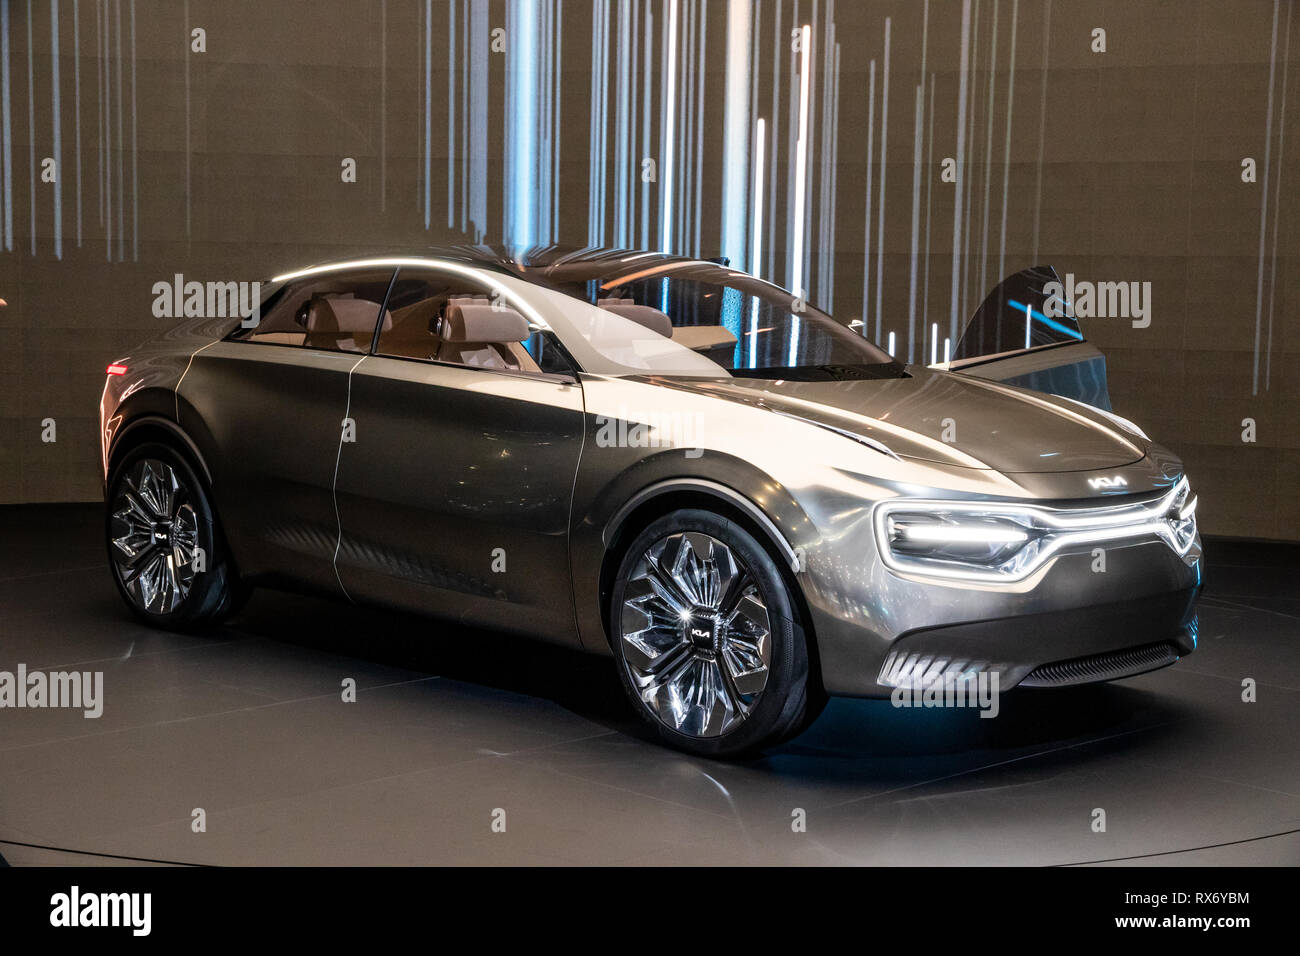 Genf, Schweiz - 5. MÄRZ 2019: Kia Concept Car reveiled auf dem 89. Internationalen Automobilsalon in Genf. Stockfoto